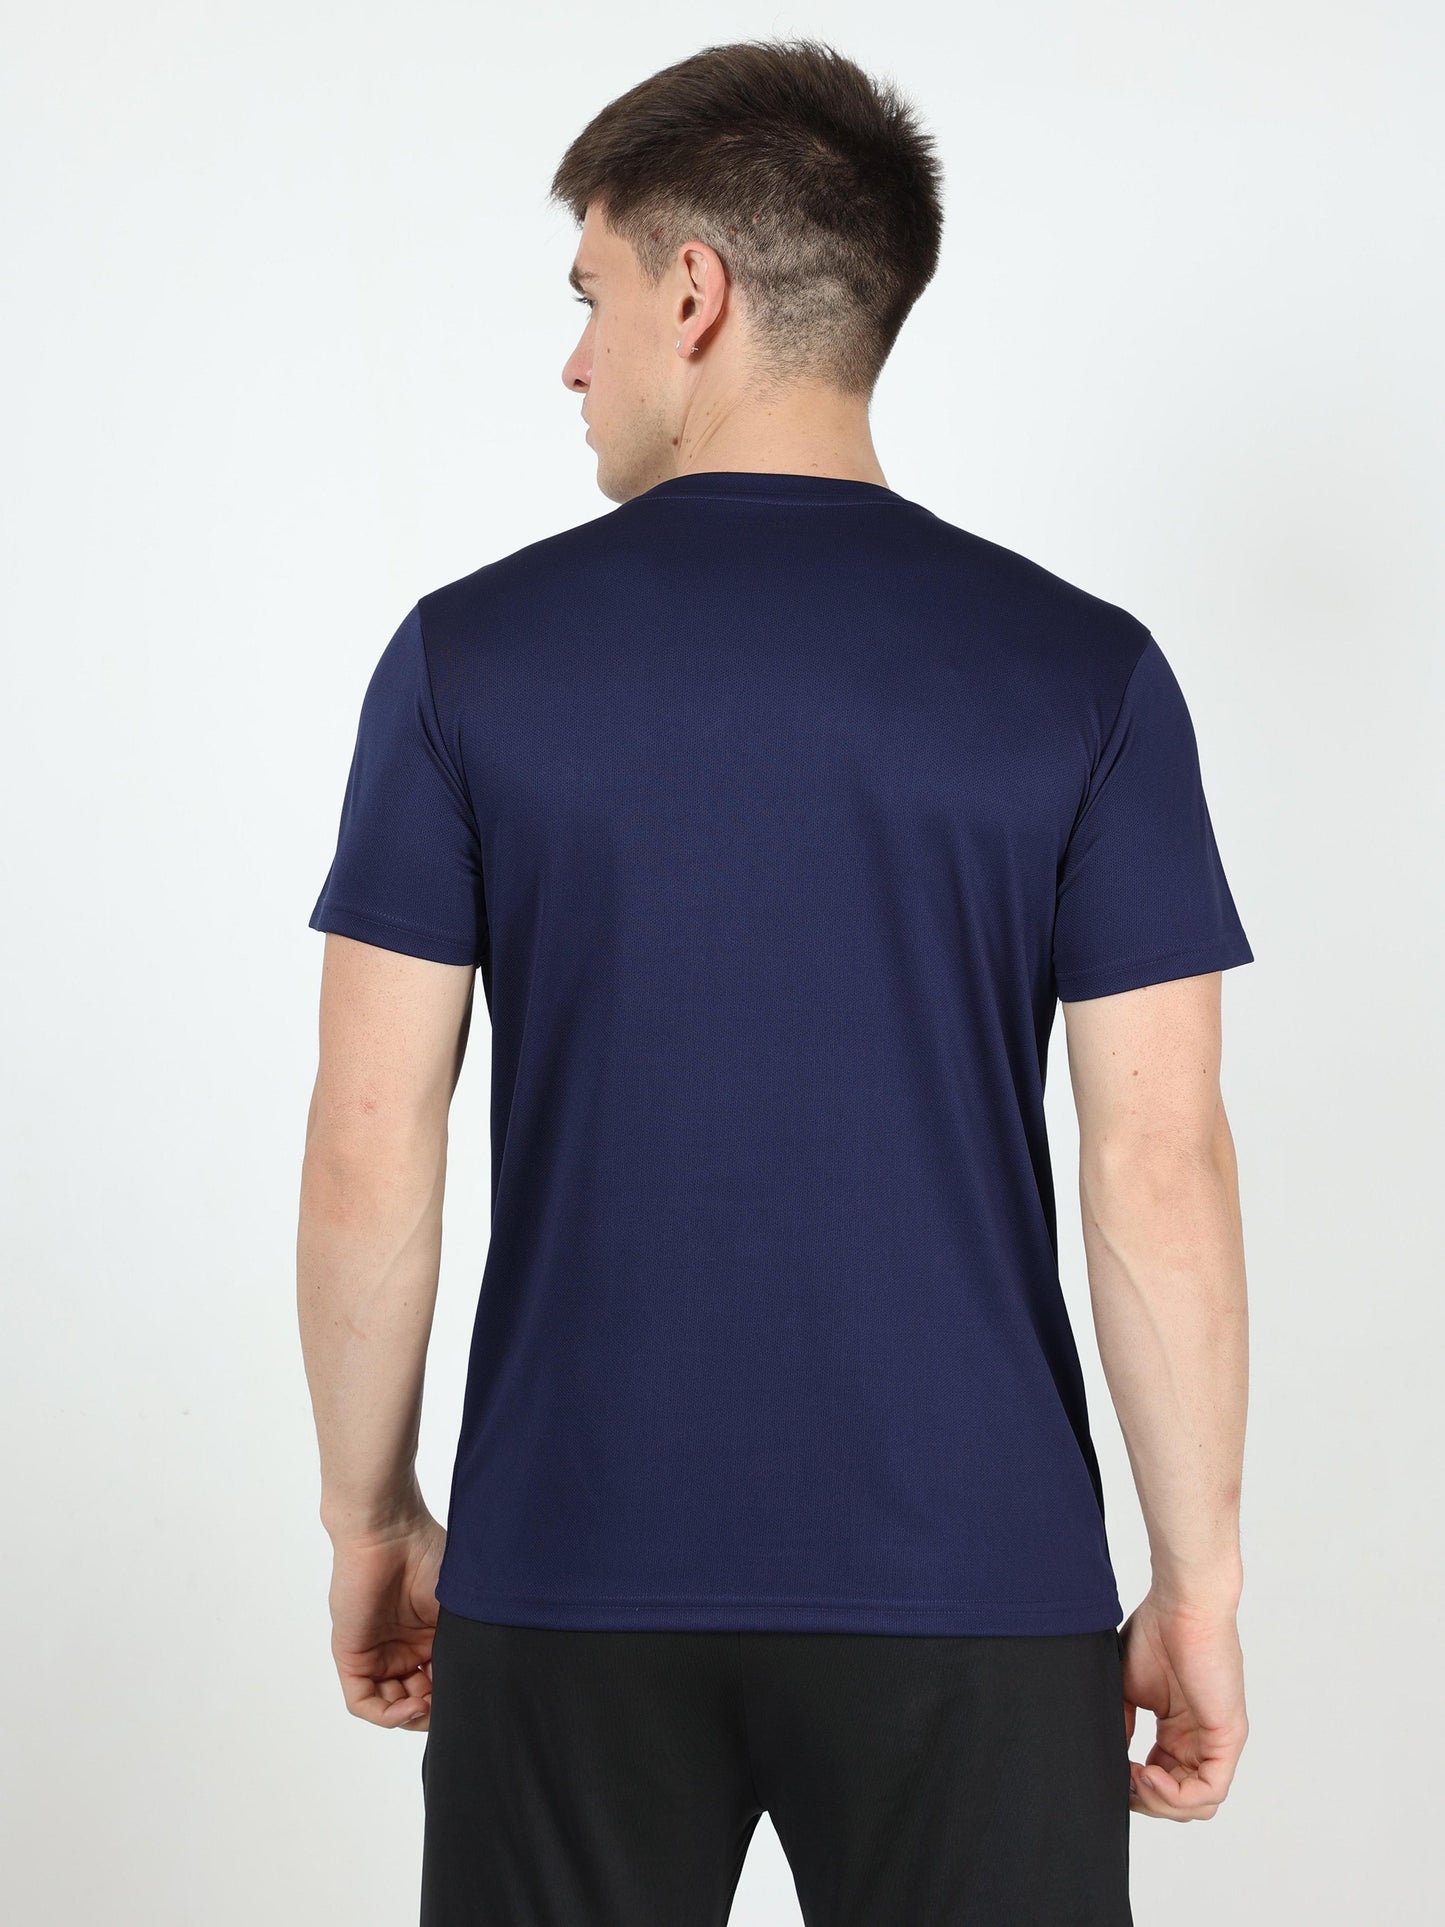 Athleisure Men's Premium T-Shirt – Navy